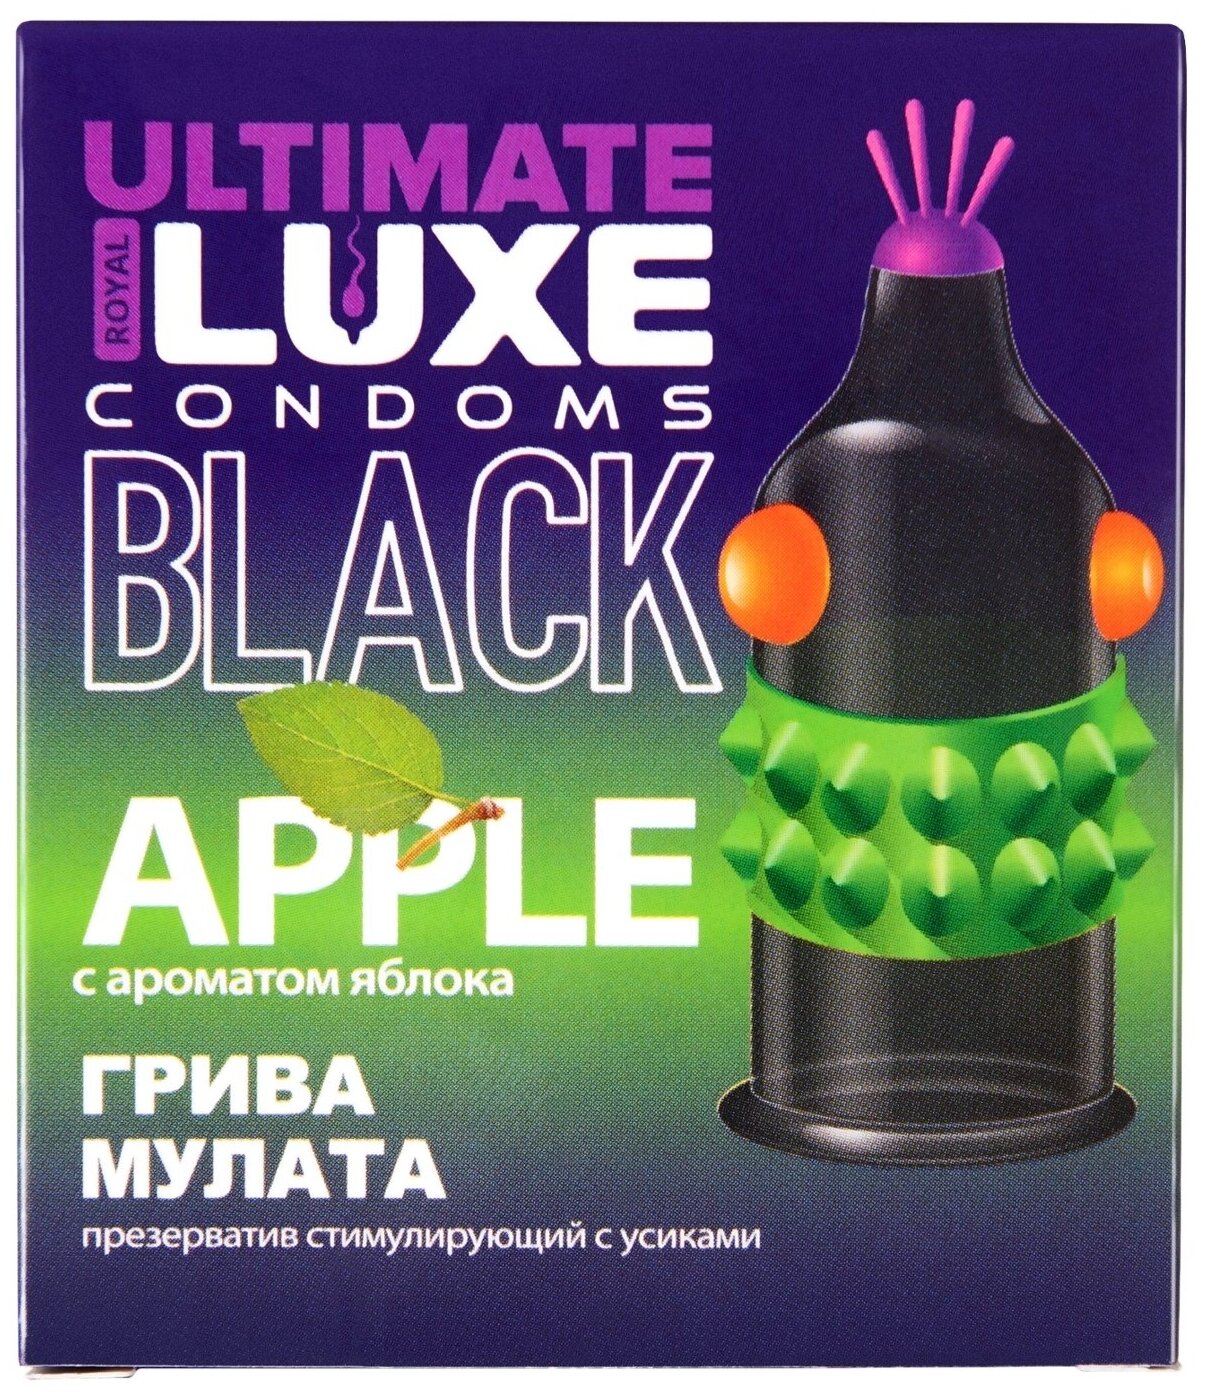 Презервативы Luxe BLACK ULTIMATE Грива Мулата (Яблоко) 1шт со смазкой с усиками и шариками с пупырышками ребристые цветные рельефные продлевающие